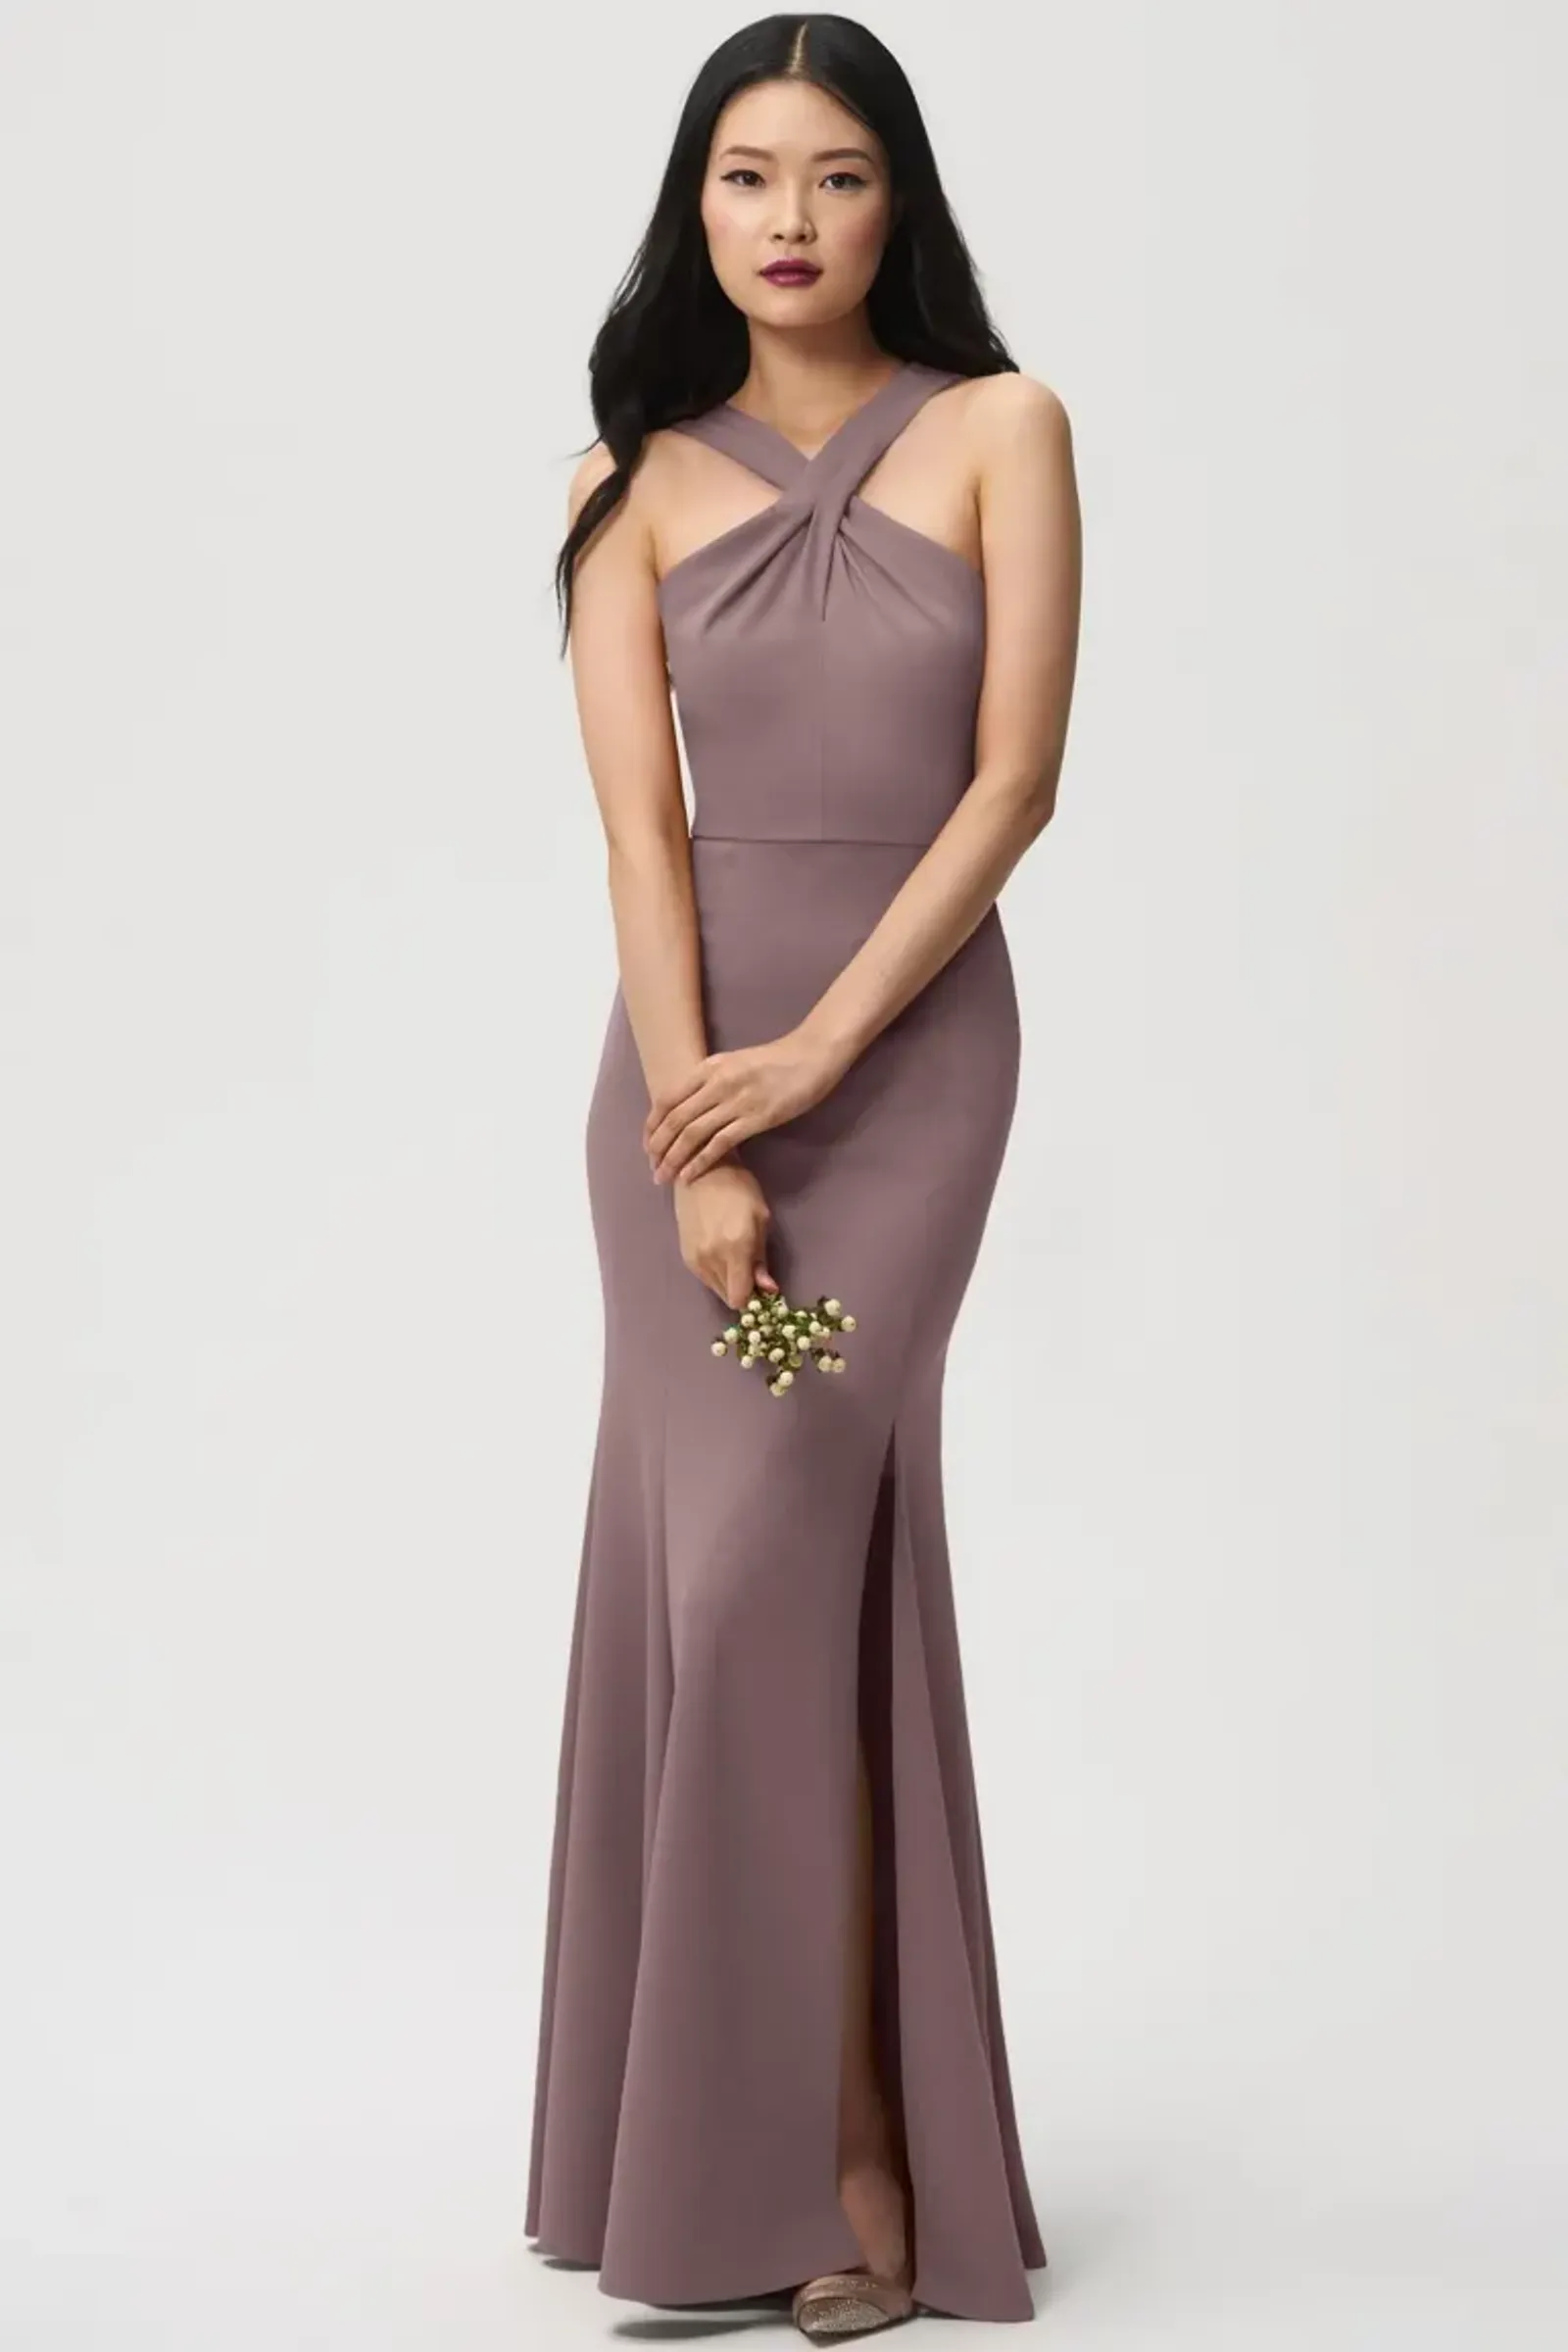 10 Model Halter Dress untuk Pesta, Tampil Glamor dan Elegan